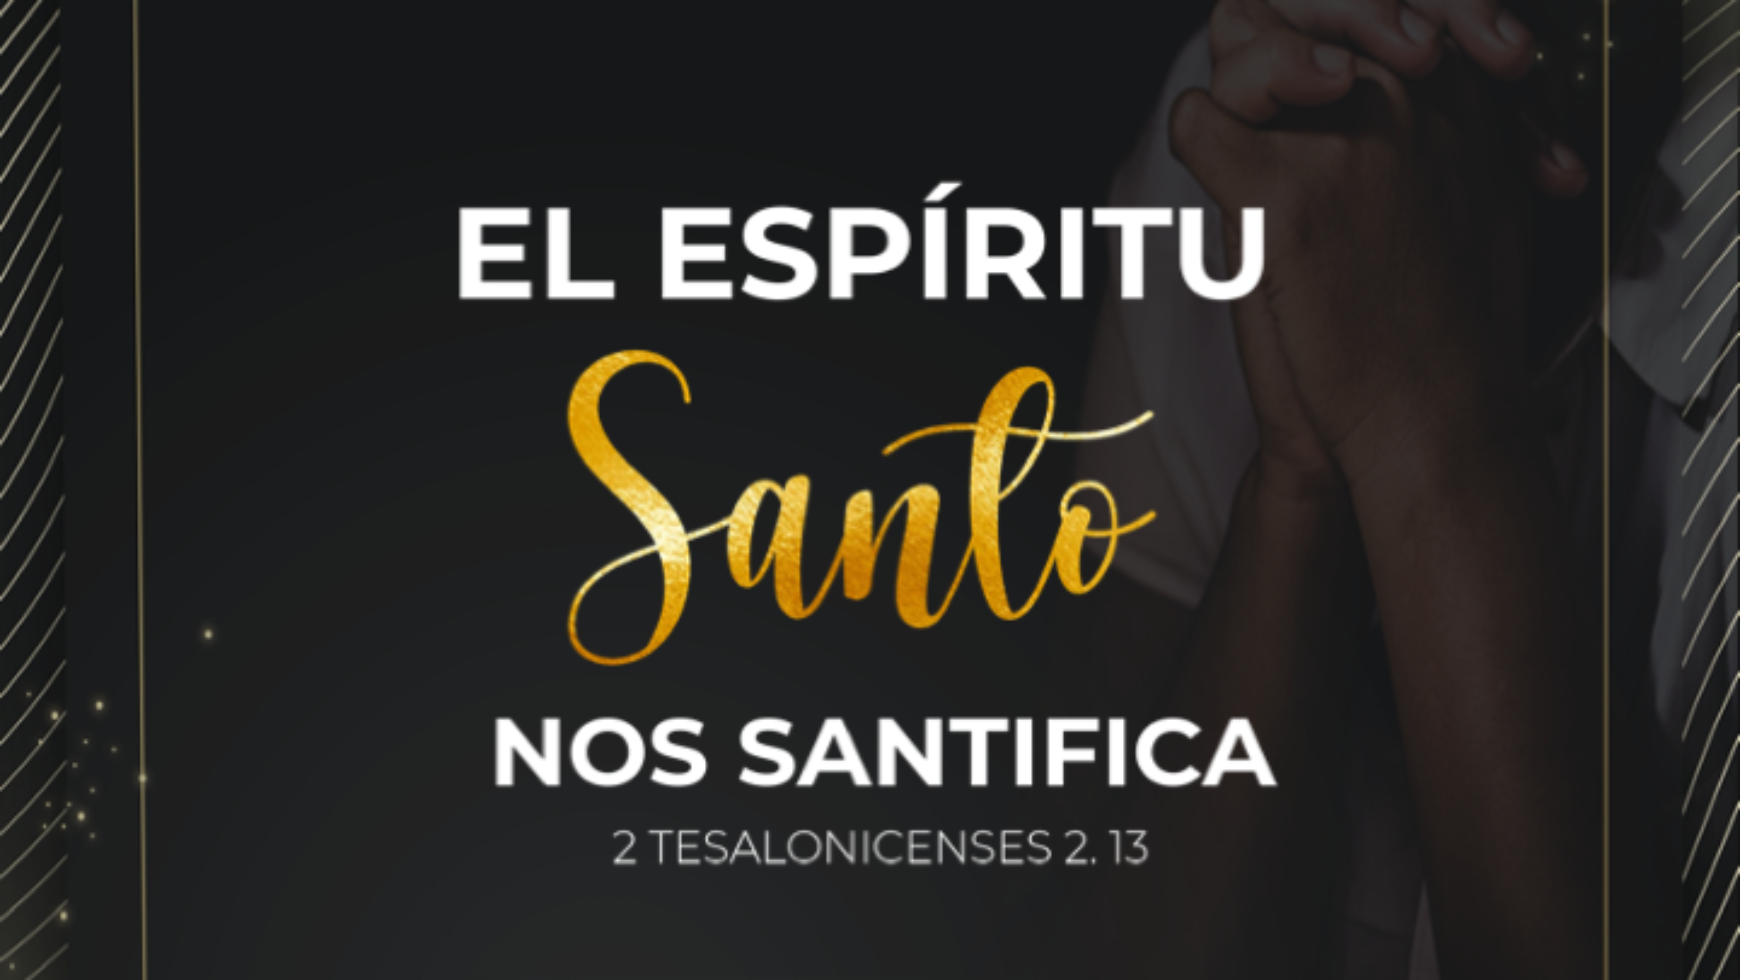 El Espíritu Santo nos Santifica